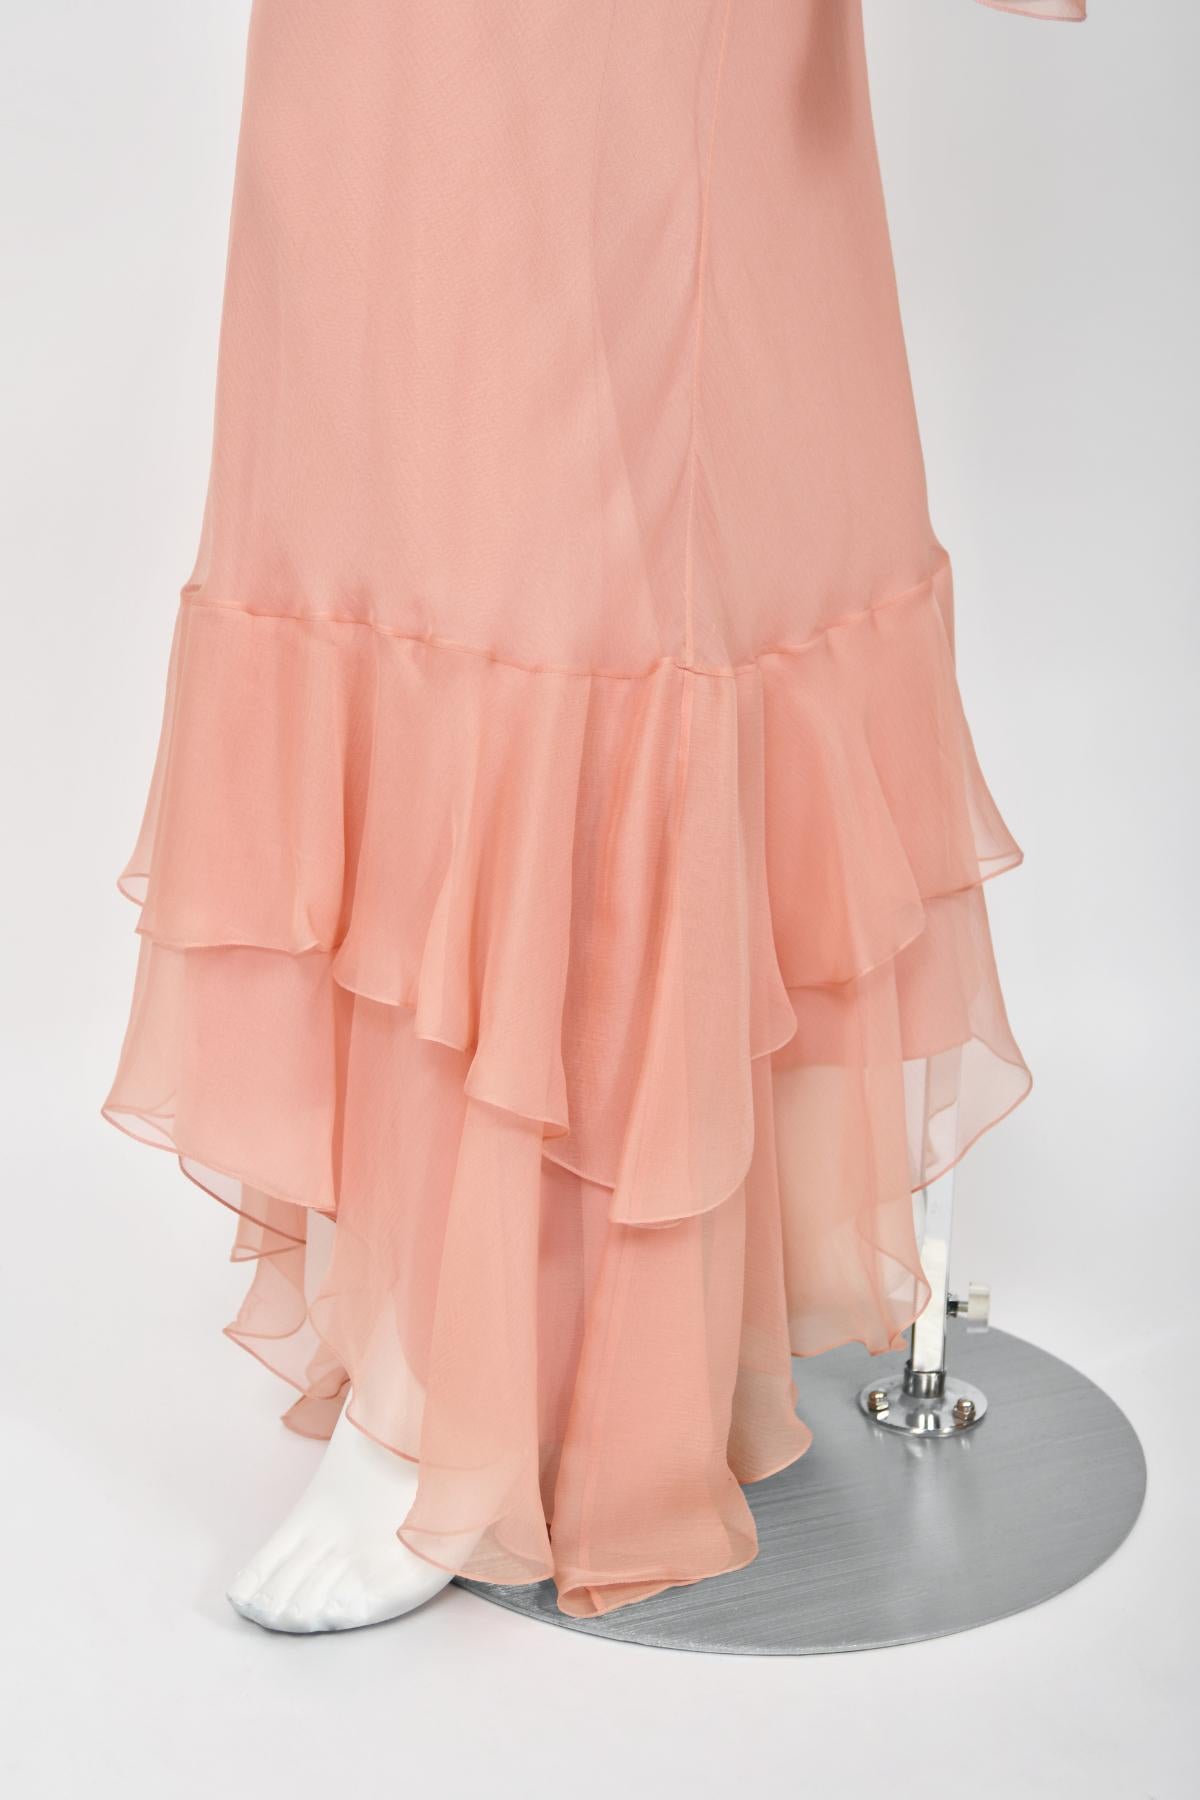 2008 John Galliano Pale Pink Semi-Sheer Silk Chiffon Draped Ruffle Bias-Cut Gown 7